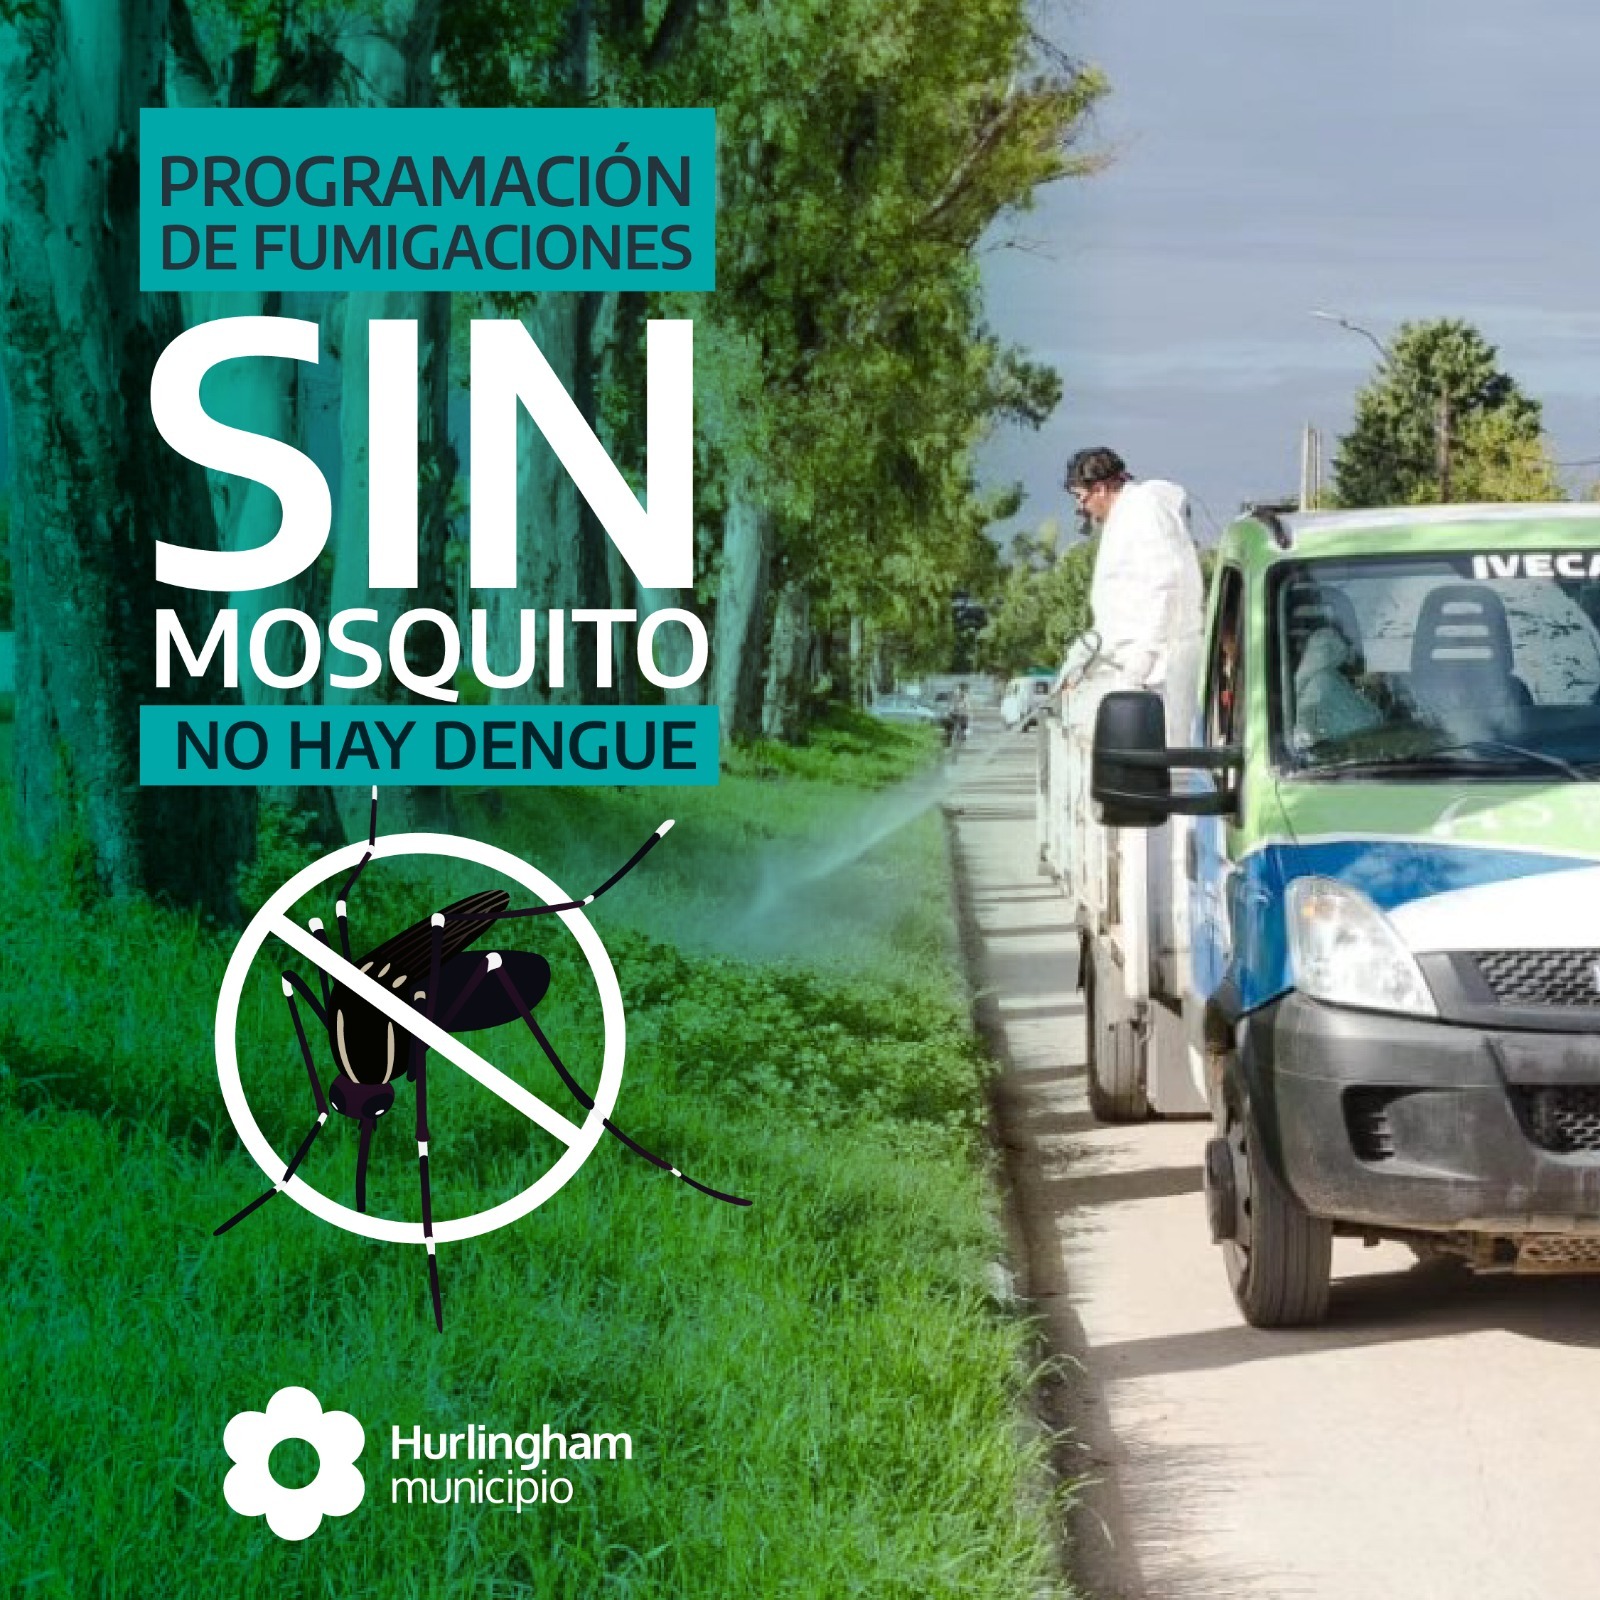 Hurlingham: Continúan los operativos de fumigación contra el Mosquito dengue